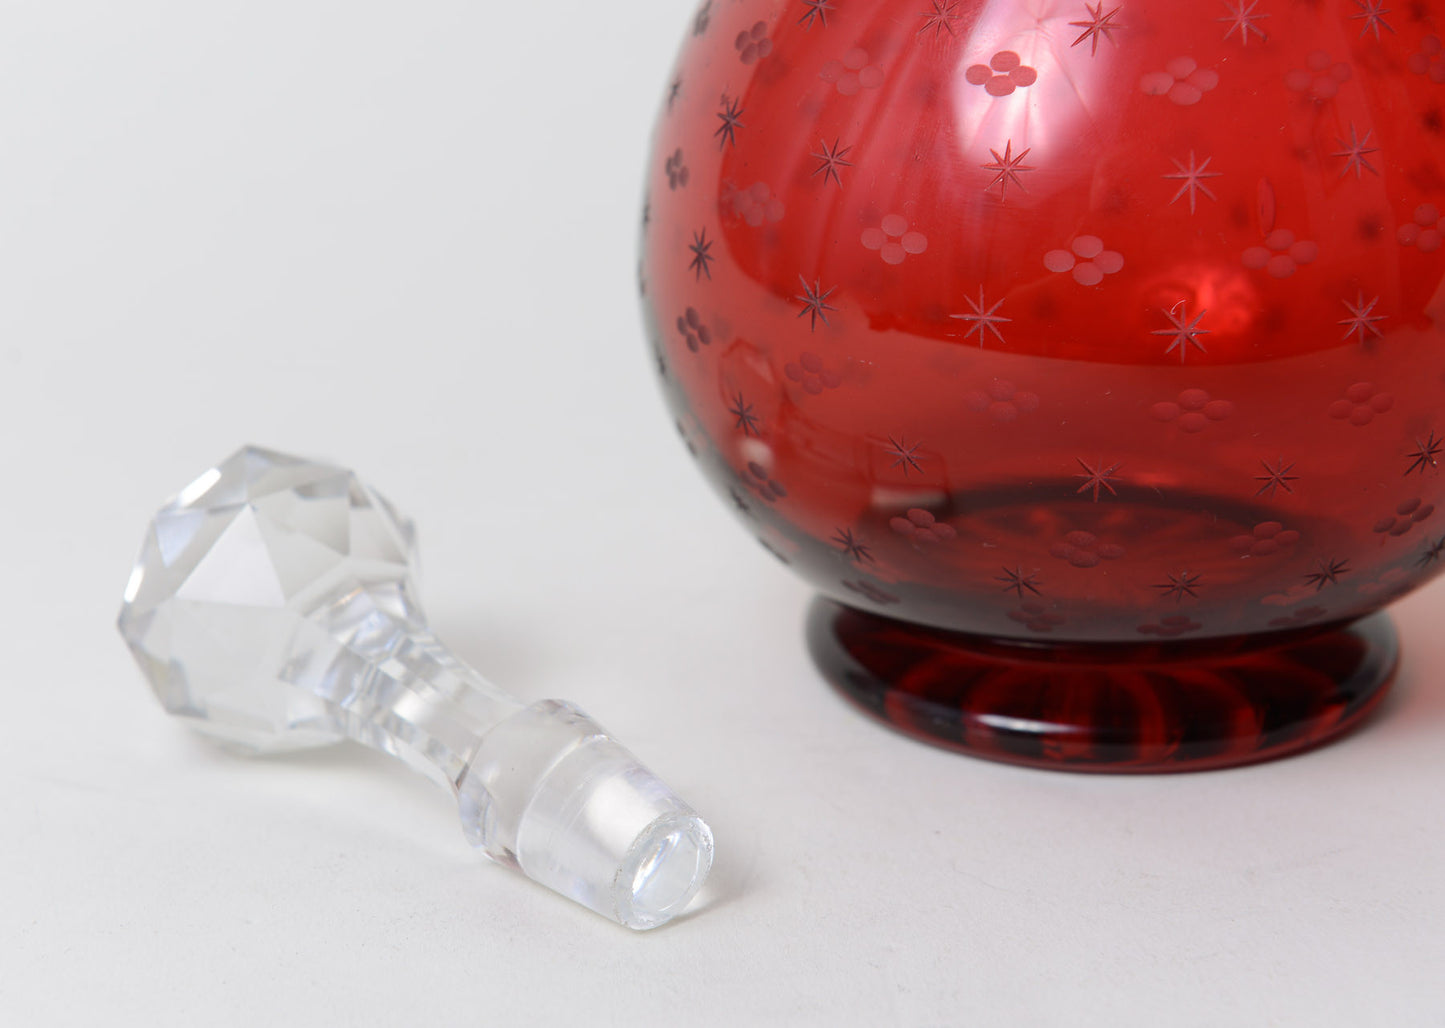 Victorian Antique Etched Cranberry Glass Decanter / Claret Jug c1860 (Code 0238) - Blue Cherry Antiques - 5